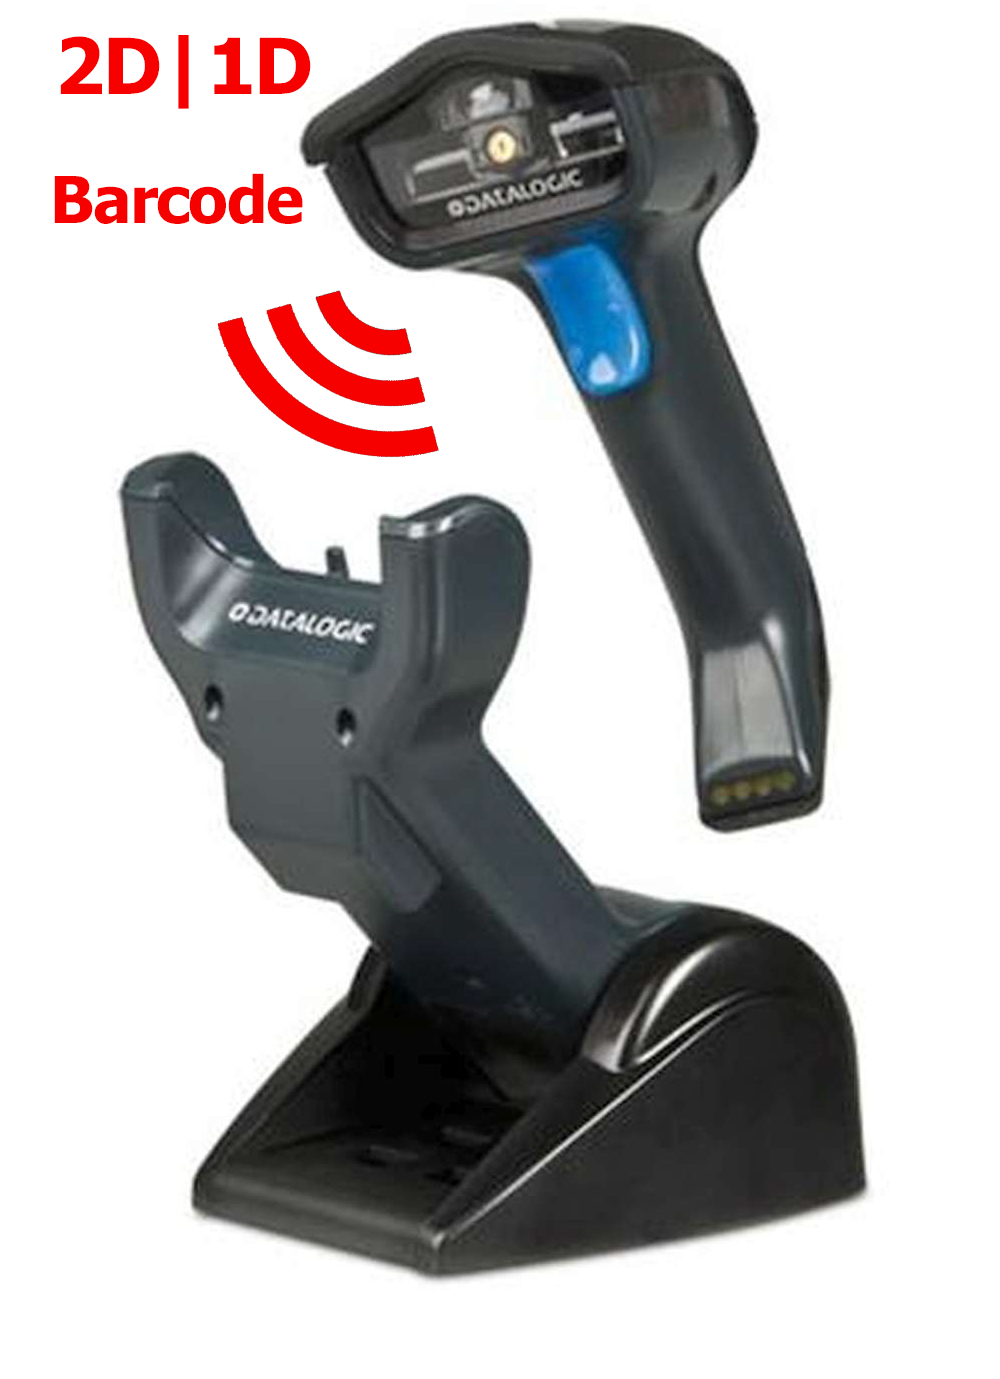 1D/2D Funkscanner Datalogic Gryphon GM4400 Barcodescanner kabellos + Dockingstation USB + PSU GM4430-bk-433k1